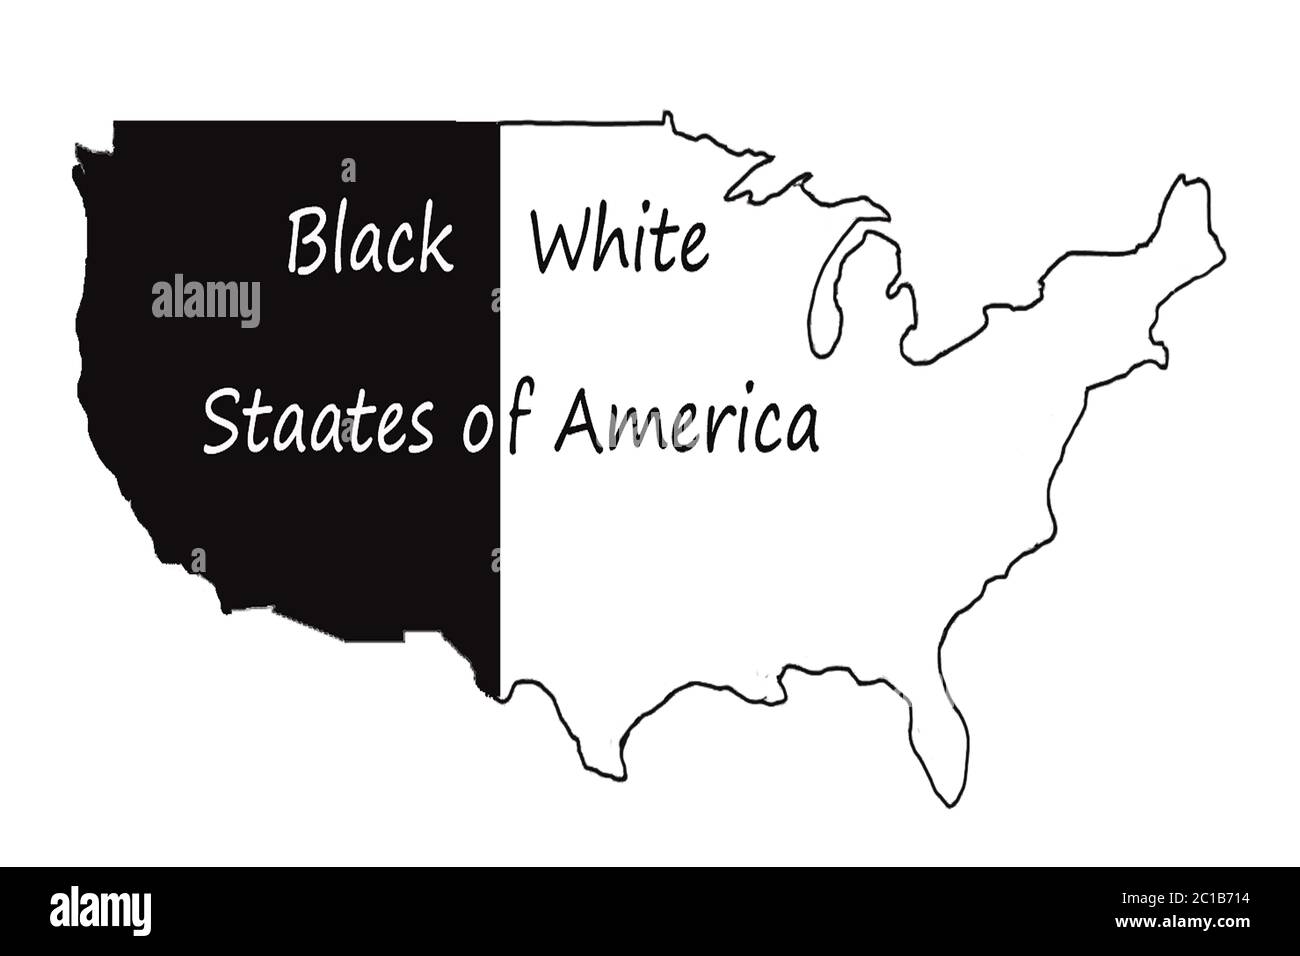 Basta con noi il razzismo. Le vite nere contano. Banner di protesta sul diritto umano dei neri negli Stati Uniti. Mappa america bianco nero Foto Stock